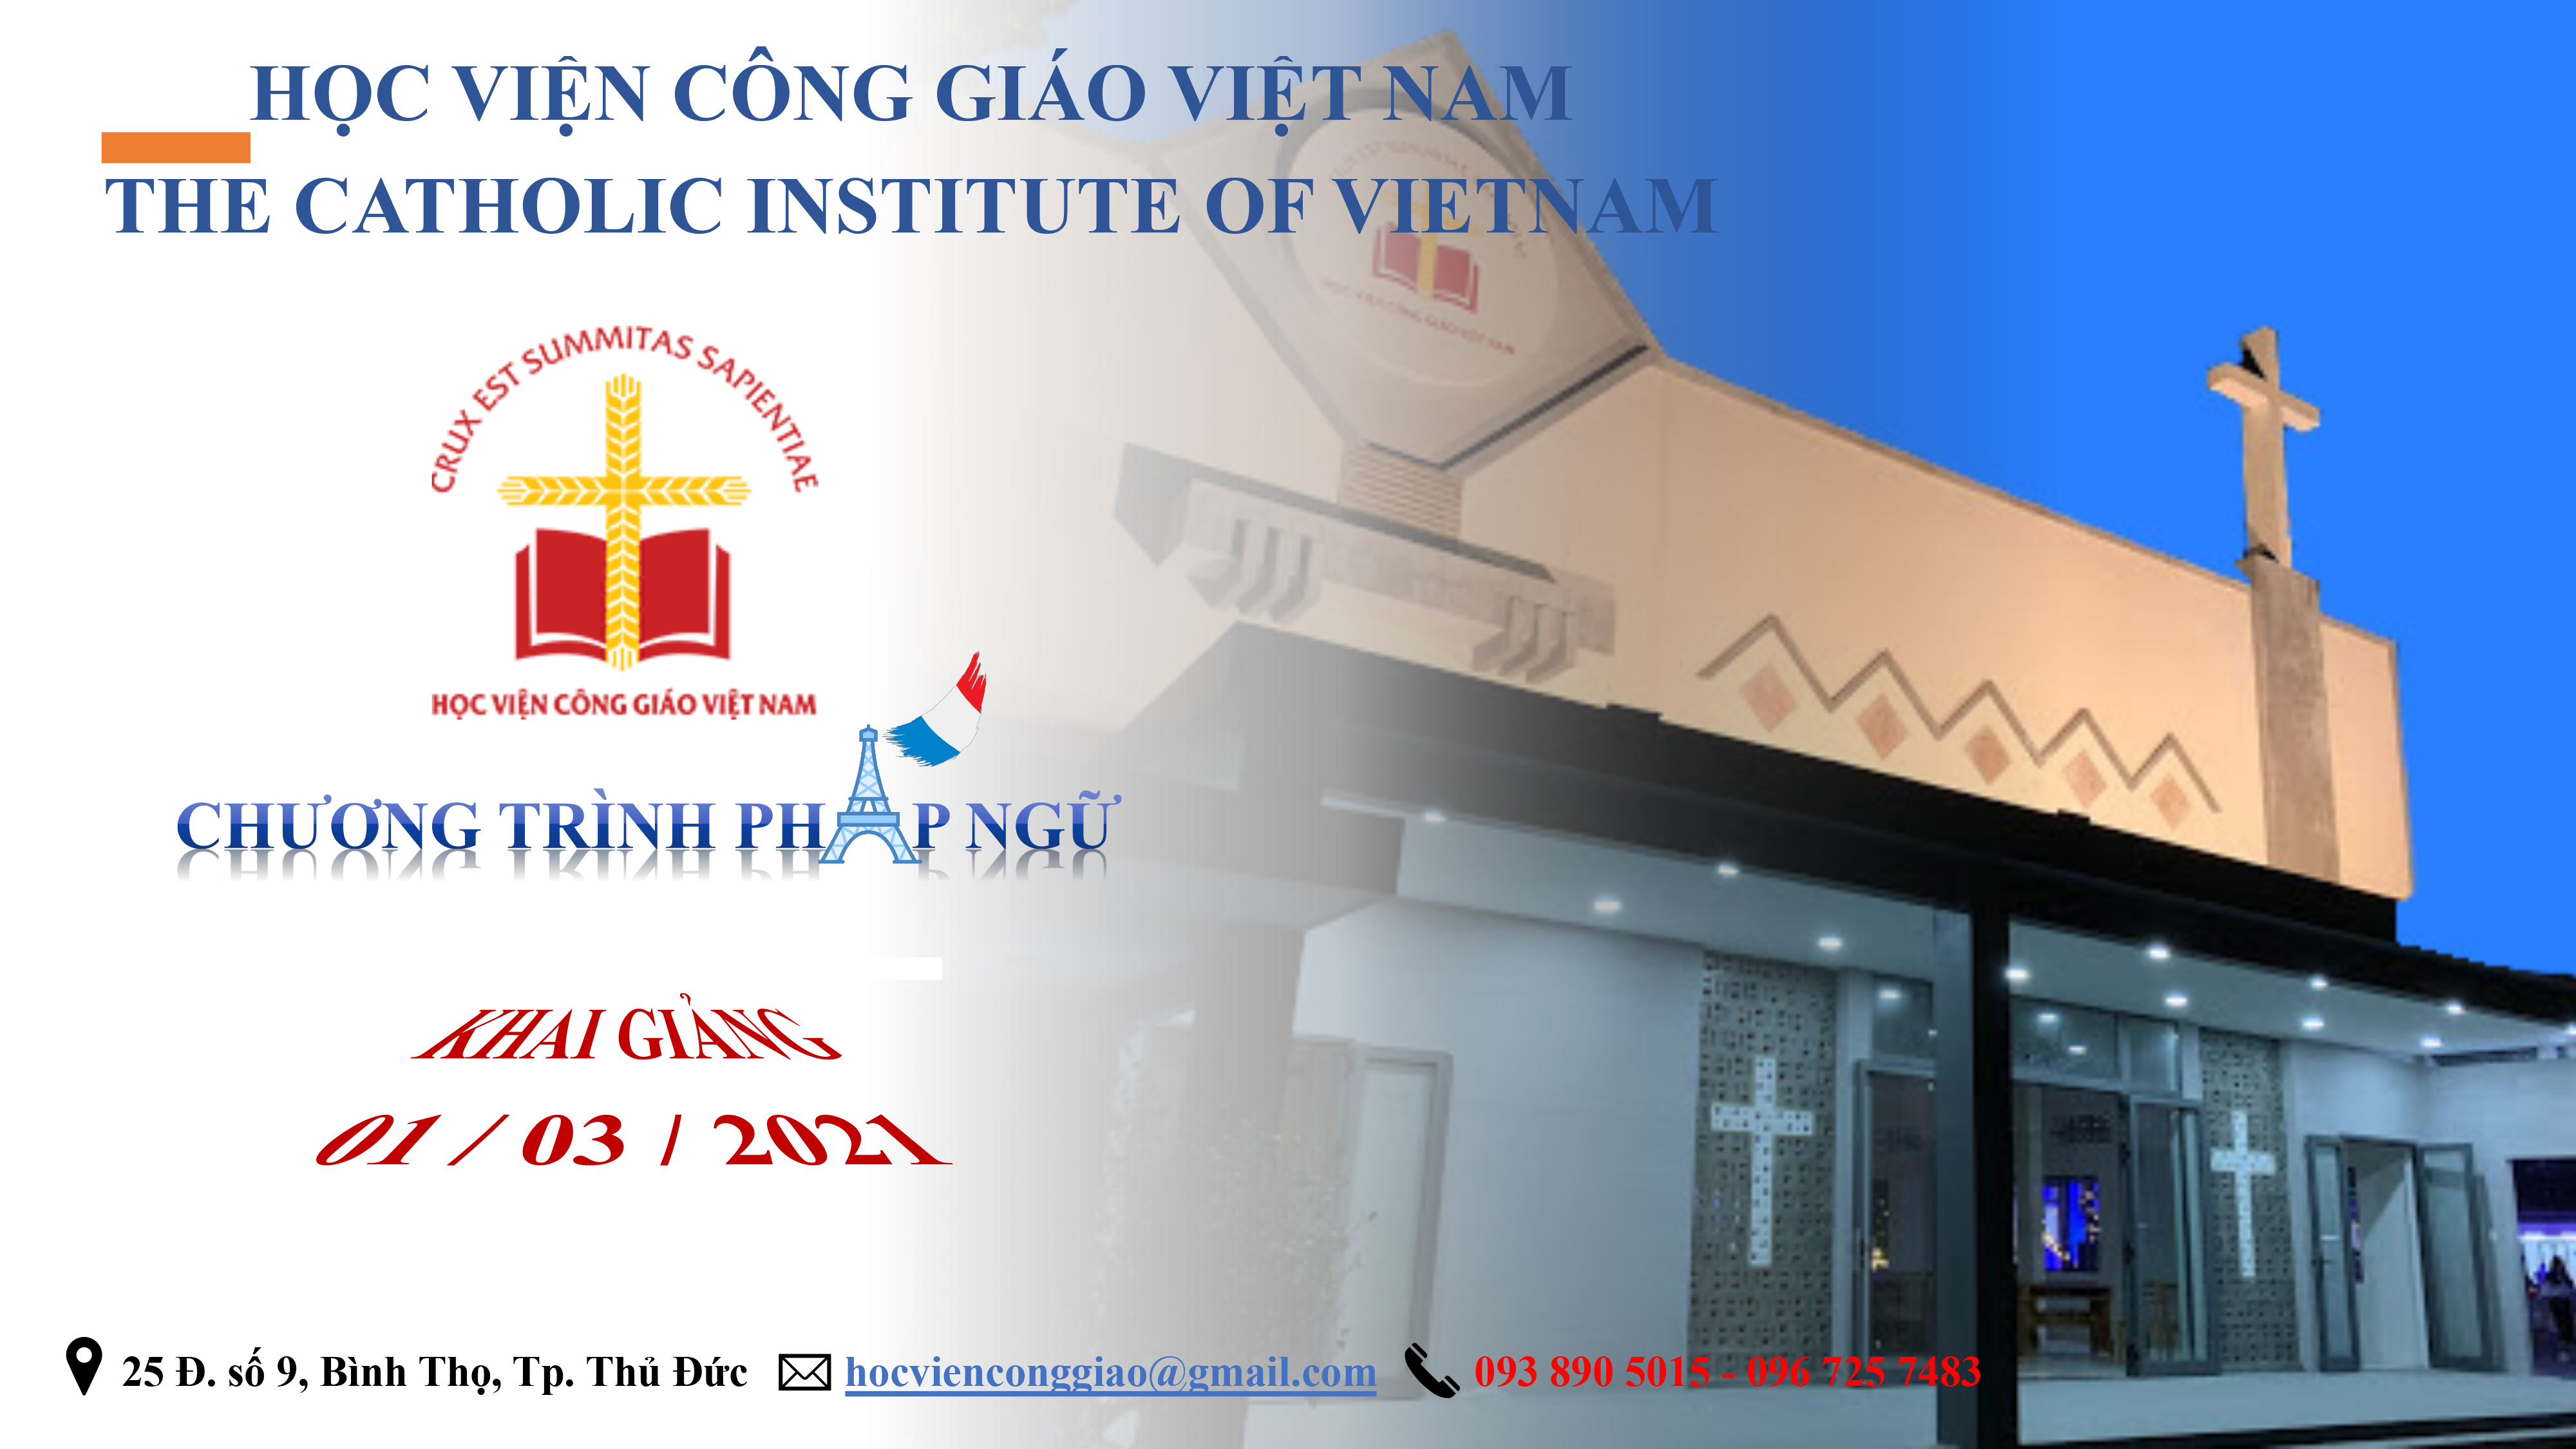 Học viện Công giáo Việt Nam: Tuyển sinh Cao học, cử nhân Thần học, chương trình ngoại ngữ năm 2021 và từ điển Kơ Ho